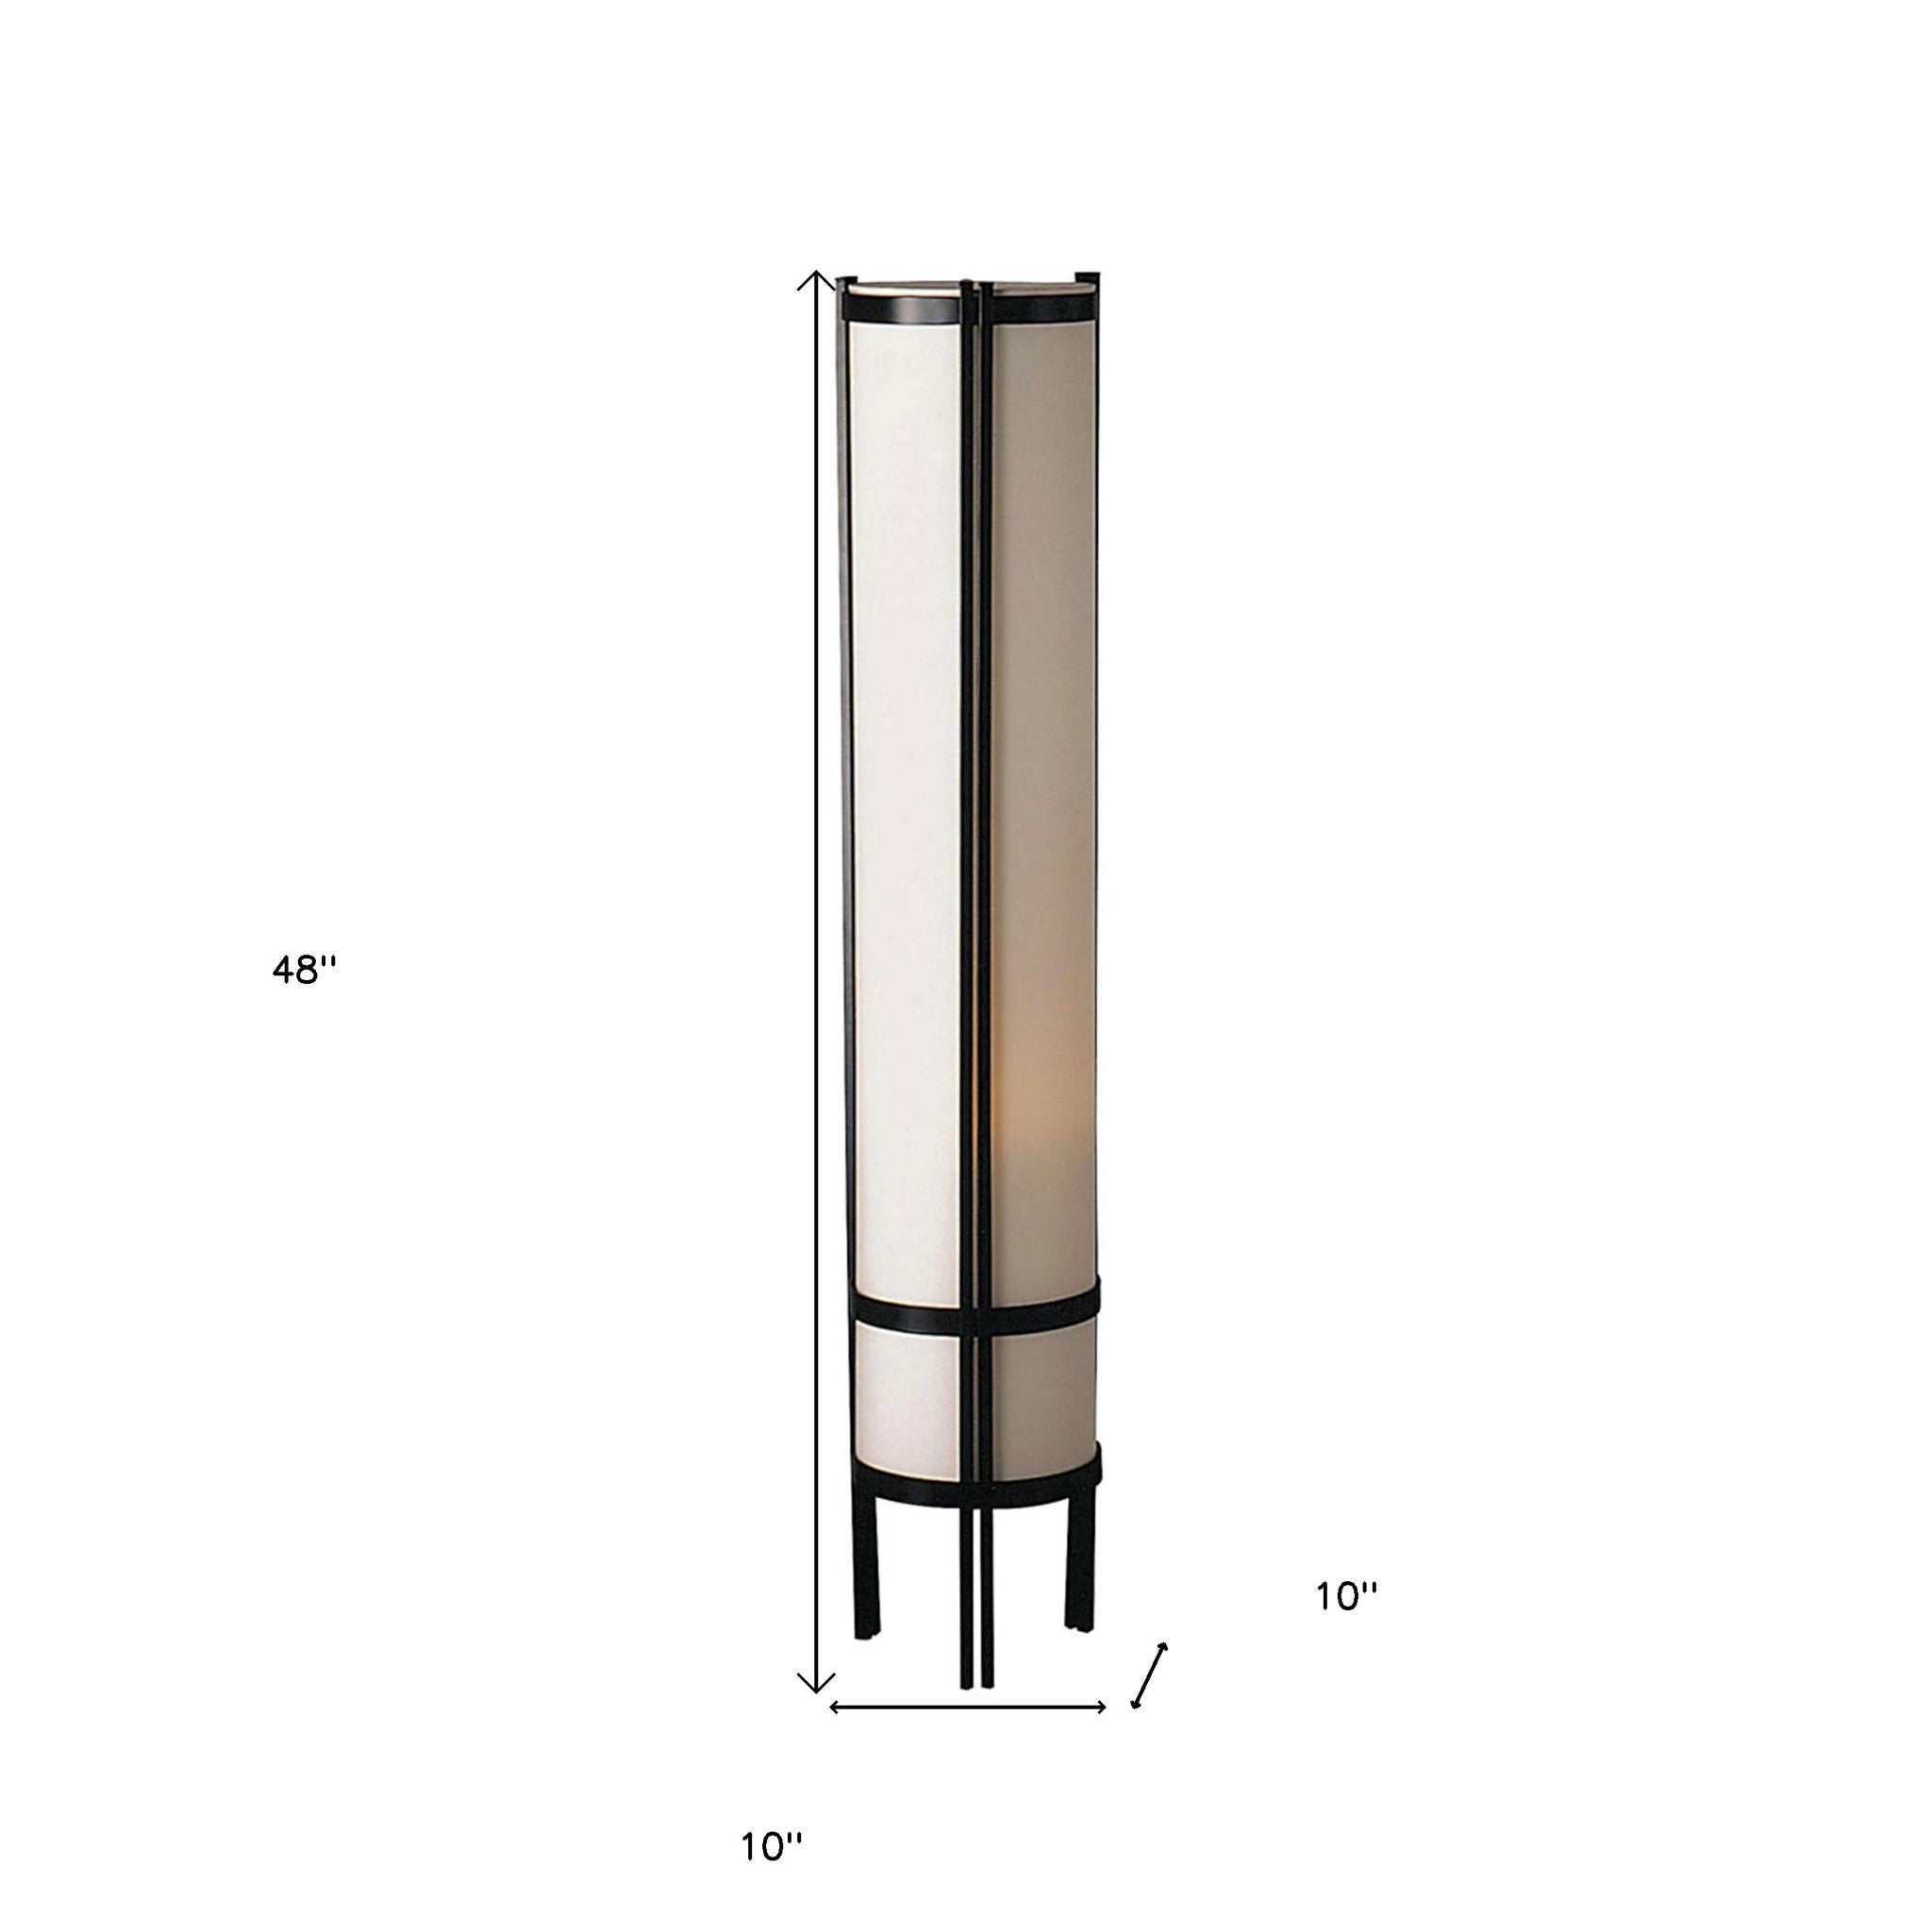 48" Steel Column Floor Lamp With Beige Drum Shade